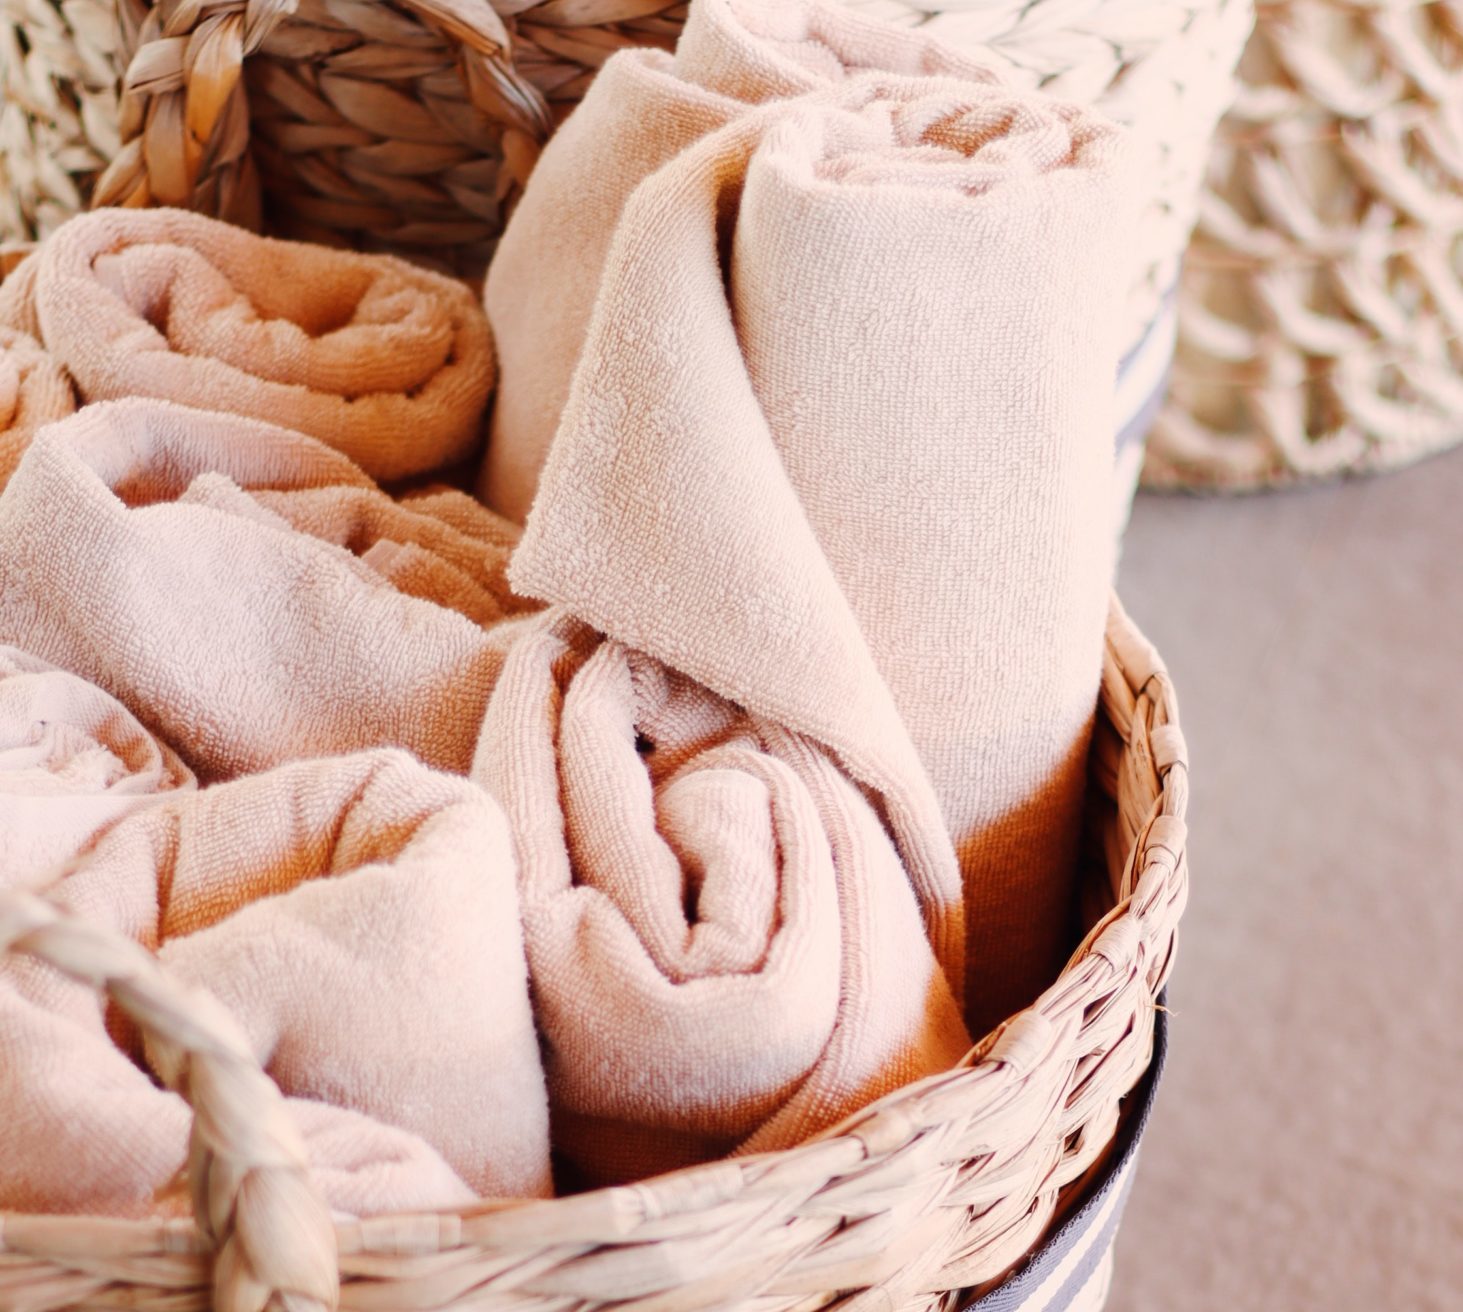 Pastel pink towels